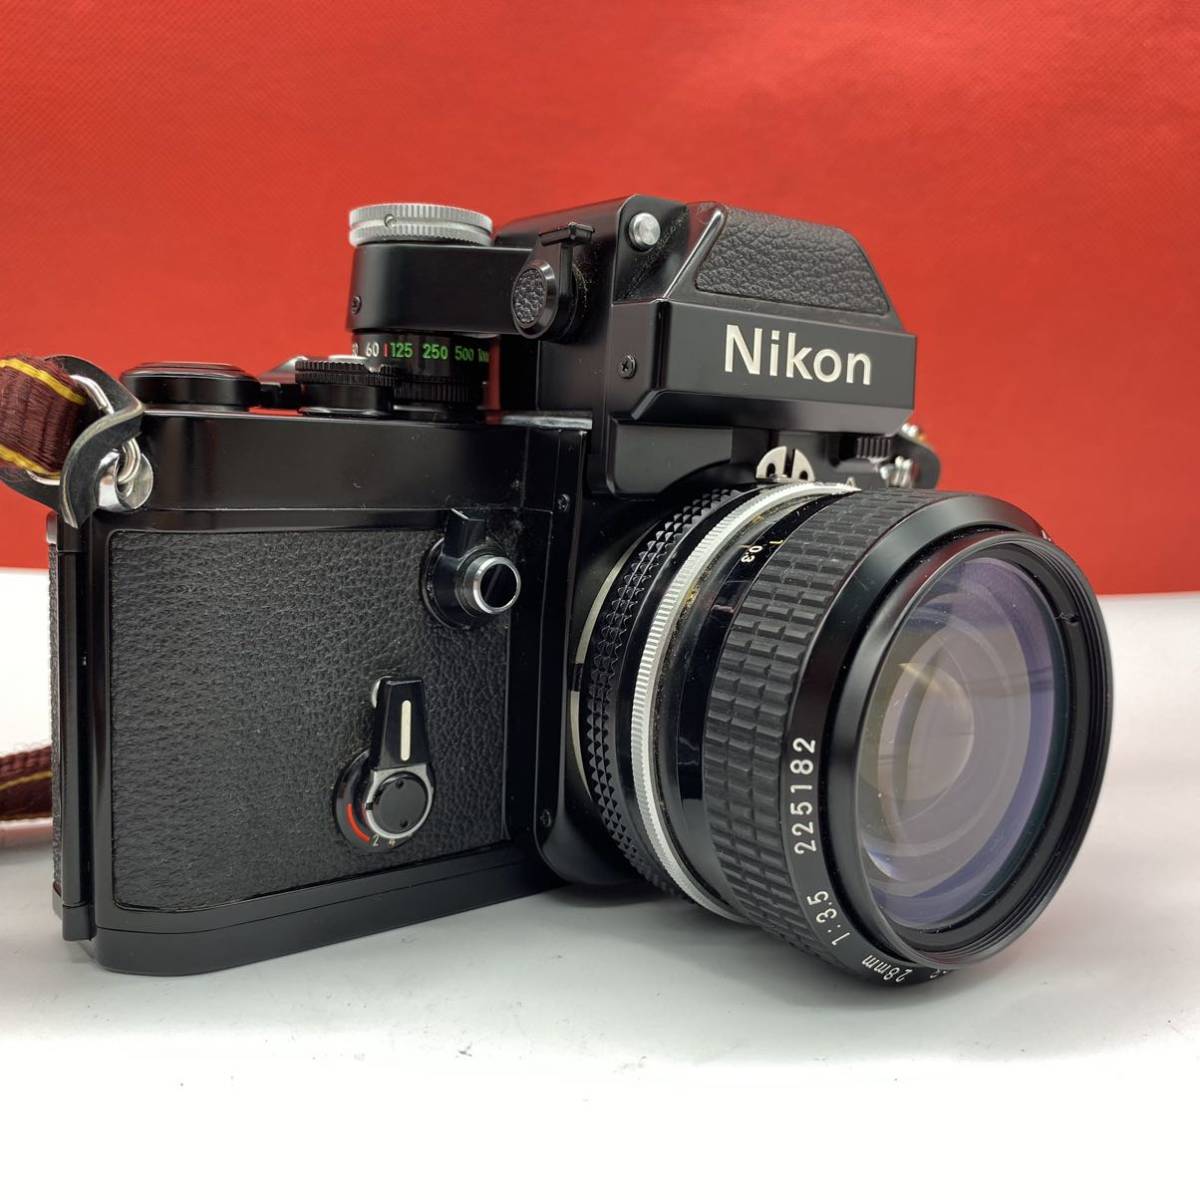 ◇A Nikon F2 フィルムカメラ 一眼レフカメラ フォトミックA DP-11